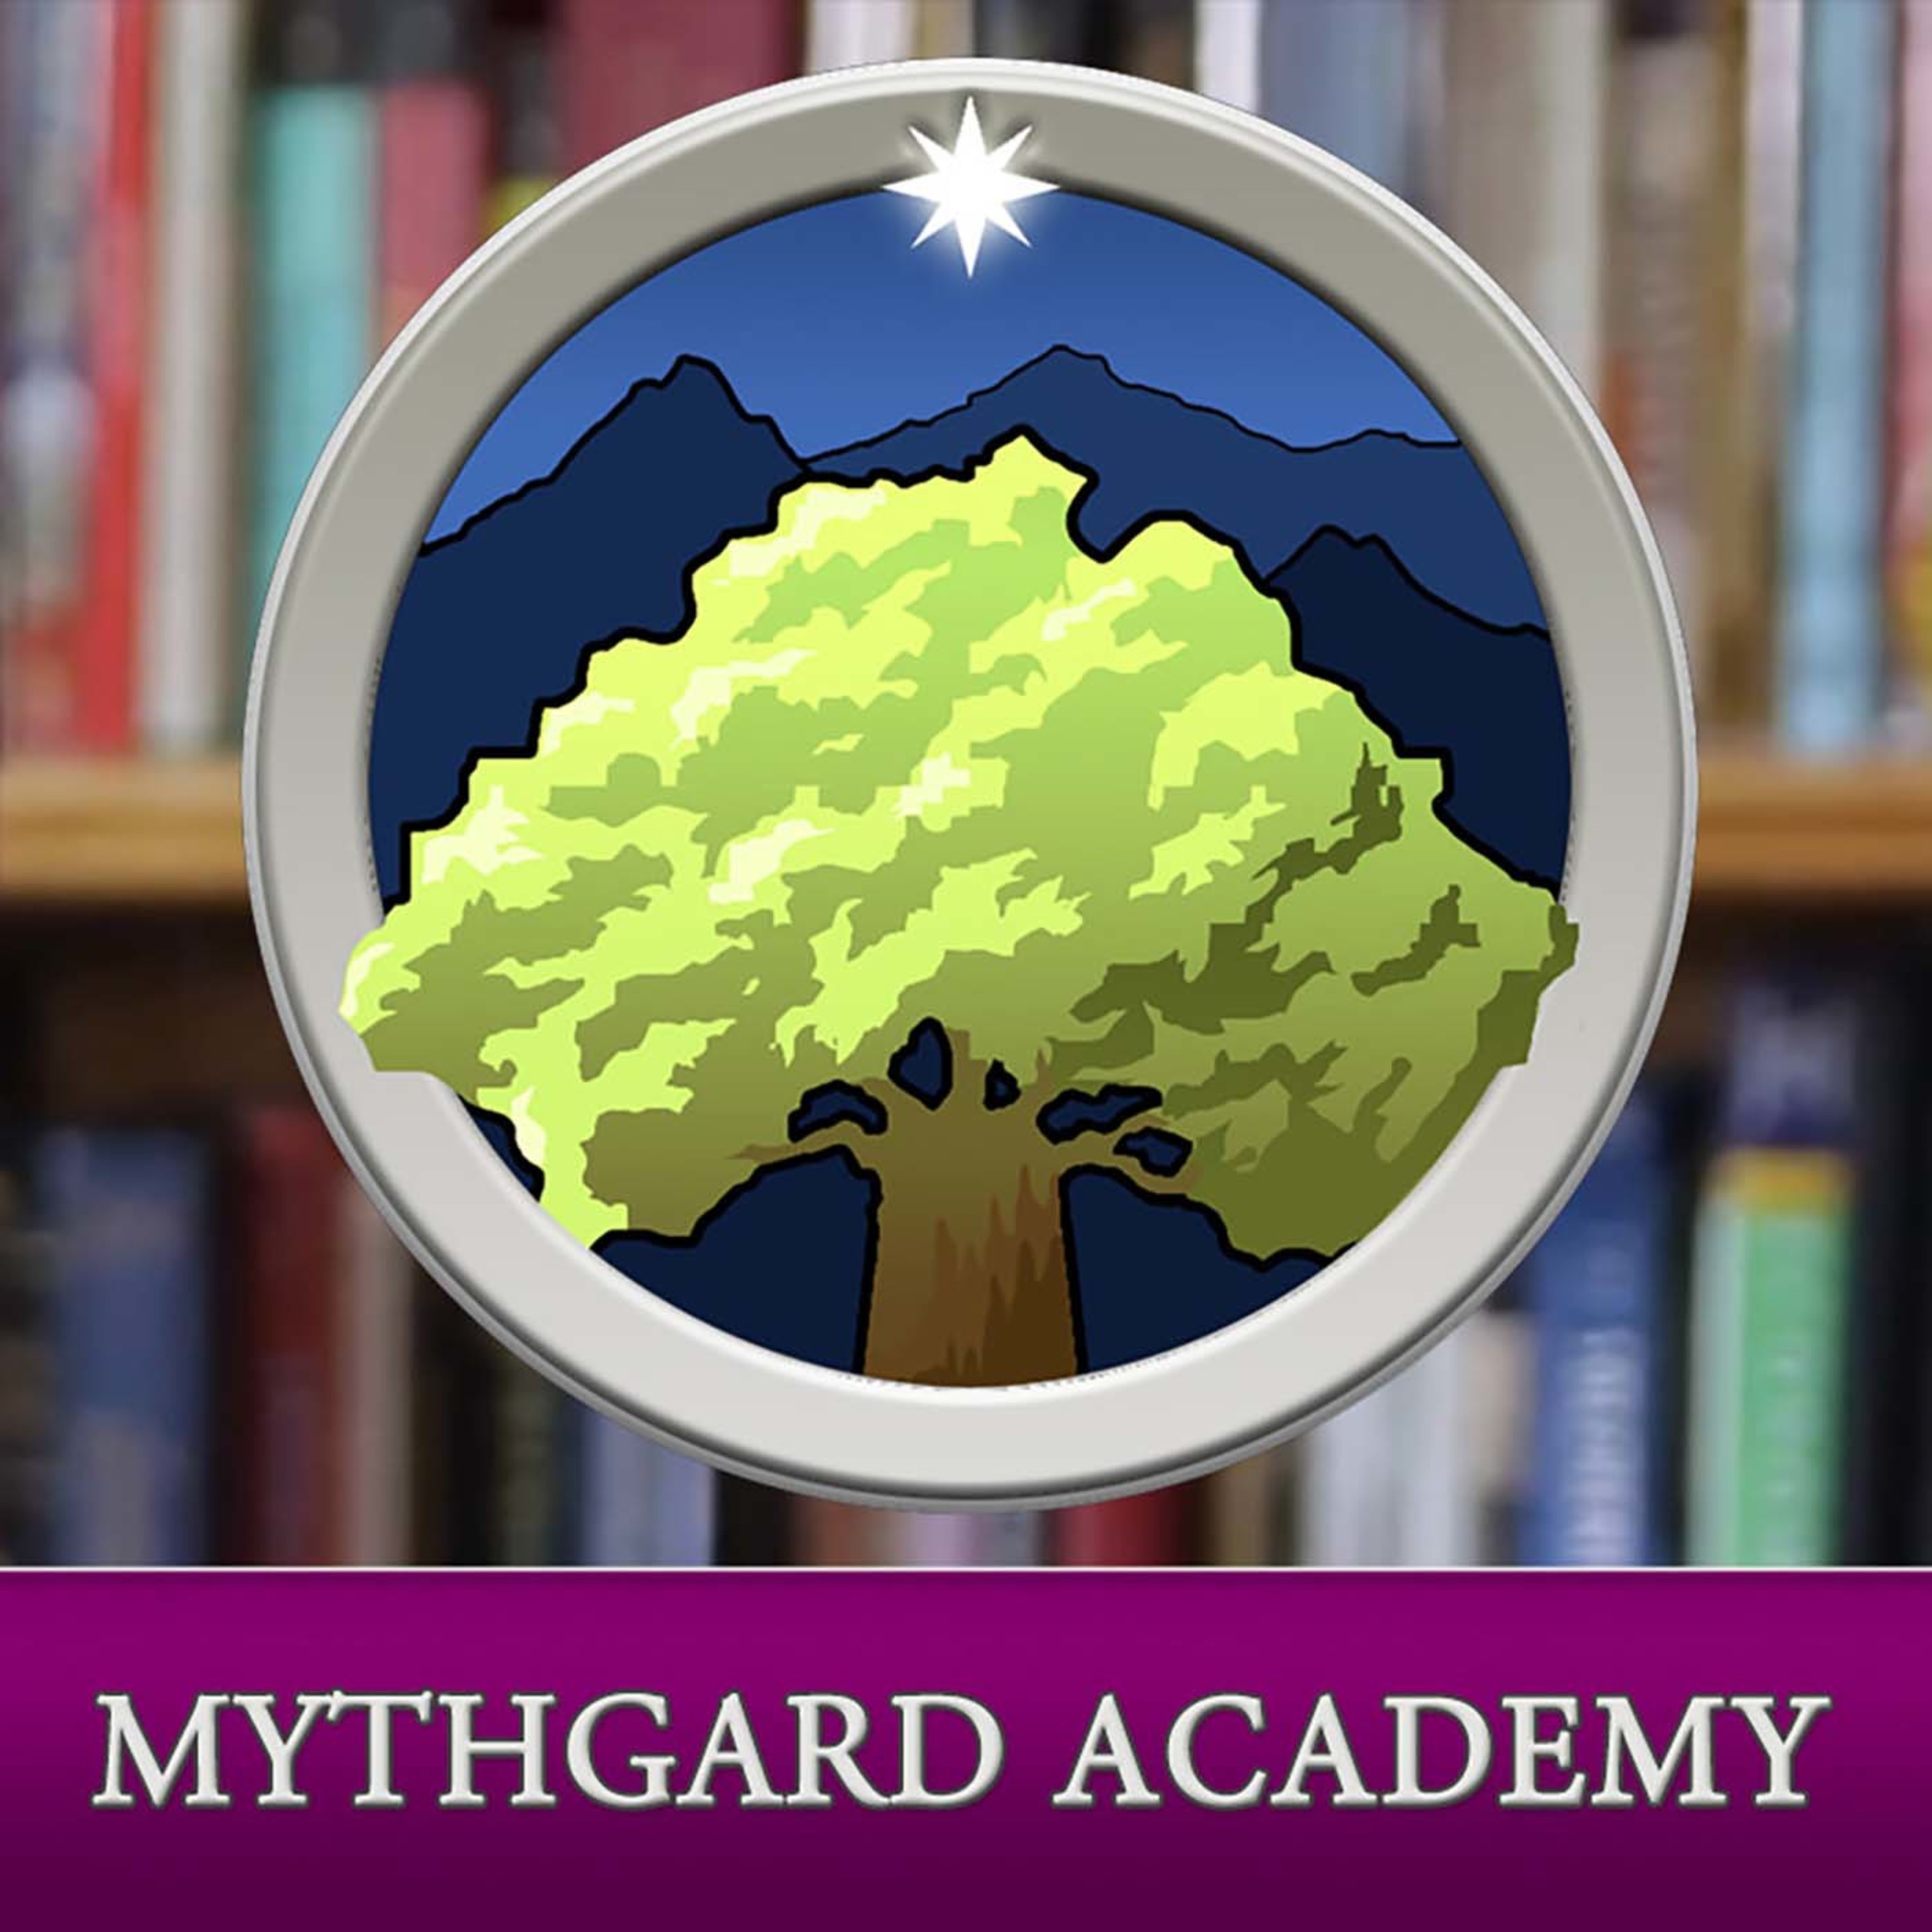 Mythgard Academy